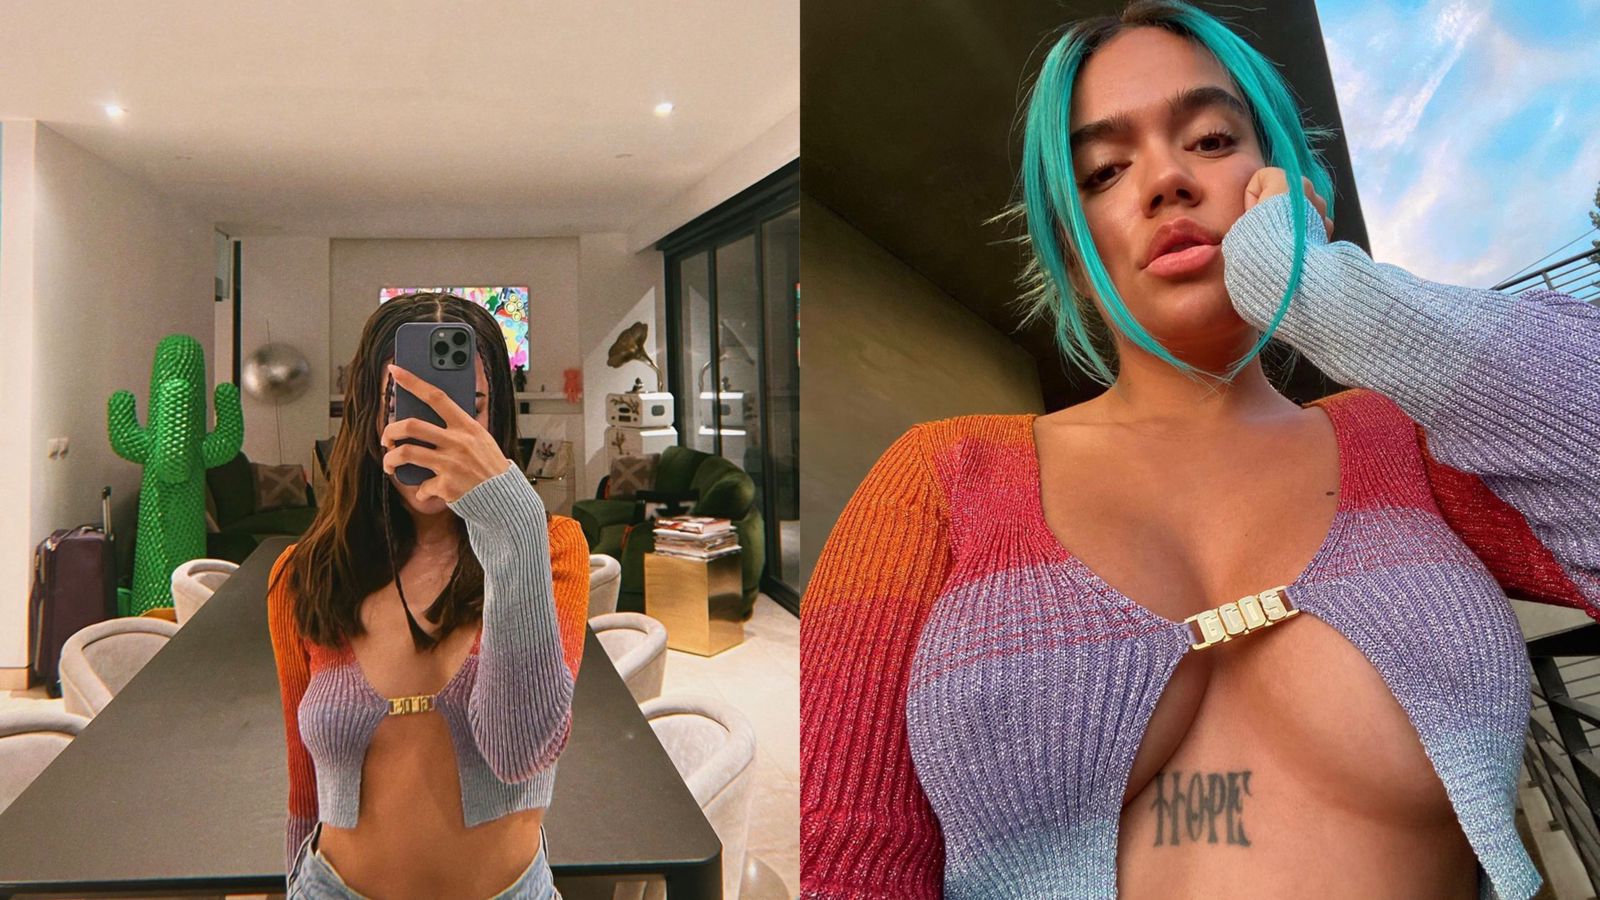 Danna Paola y Karol G conmocionaron en redes sociales al usar la misma  prenda - Infobae